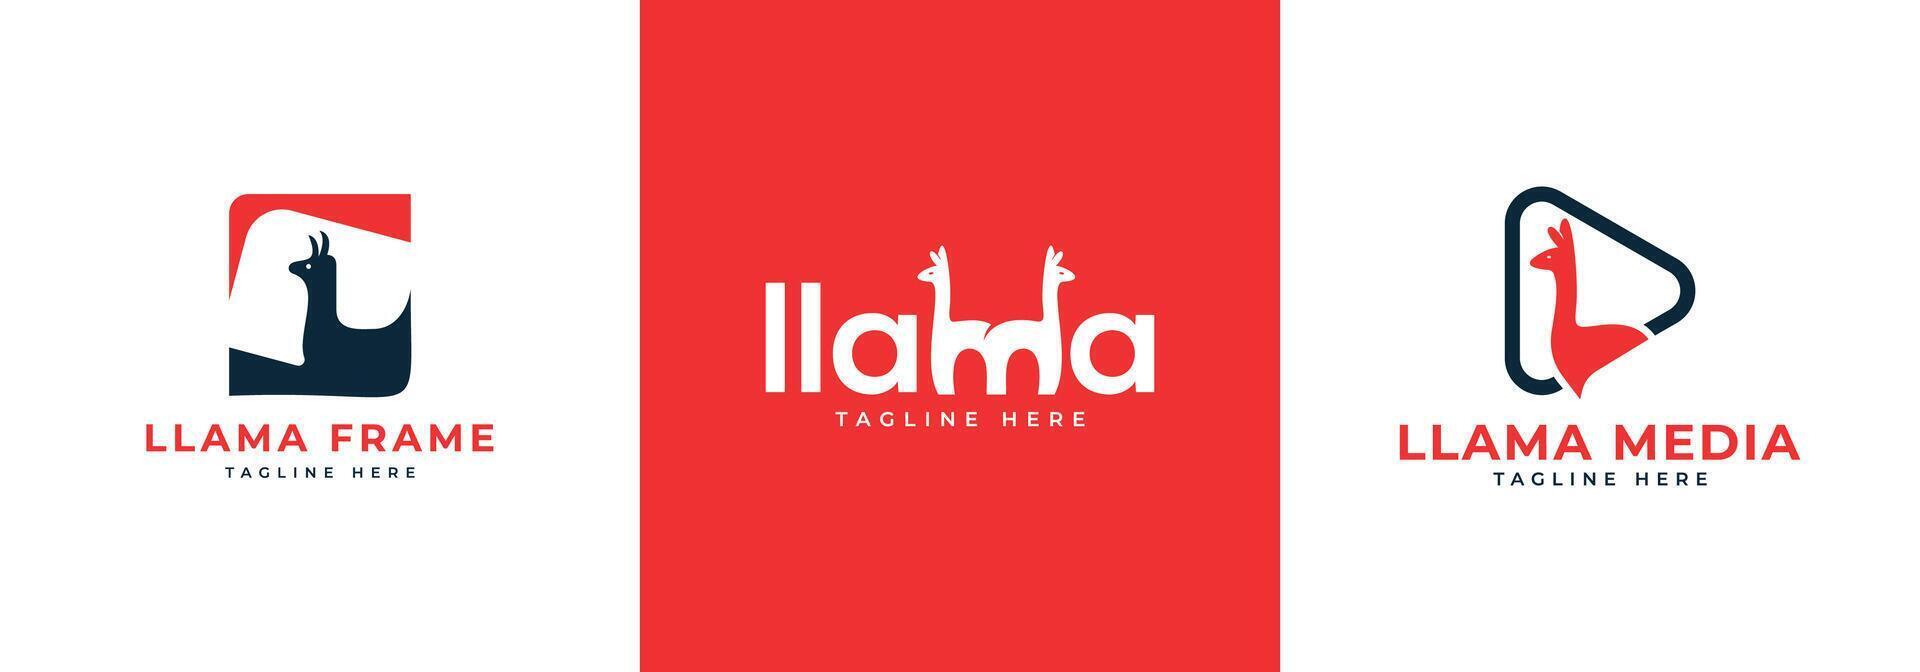 Llama creative modern Logo designs collection template vector